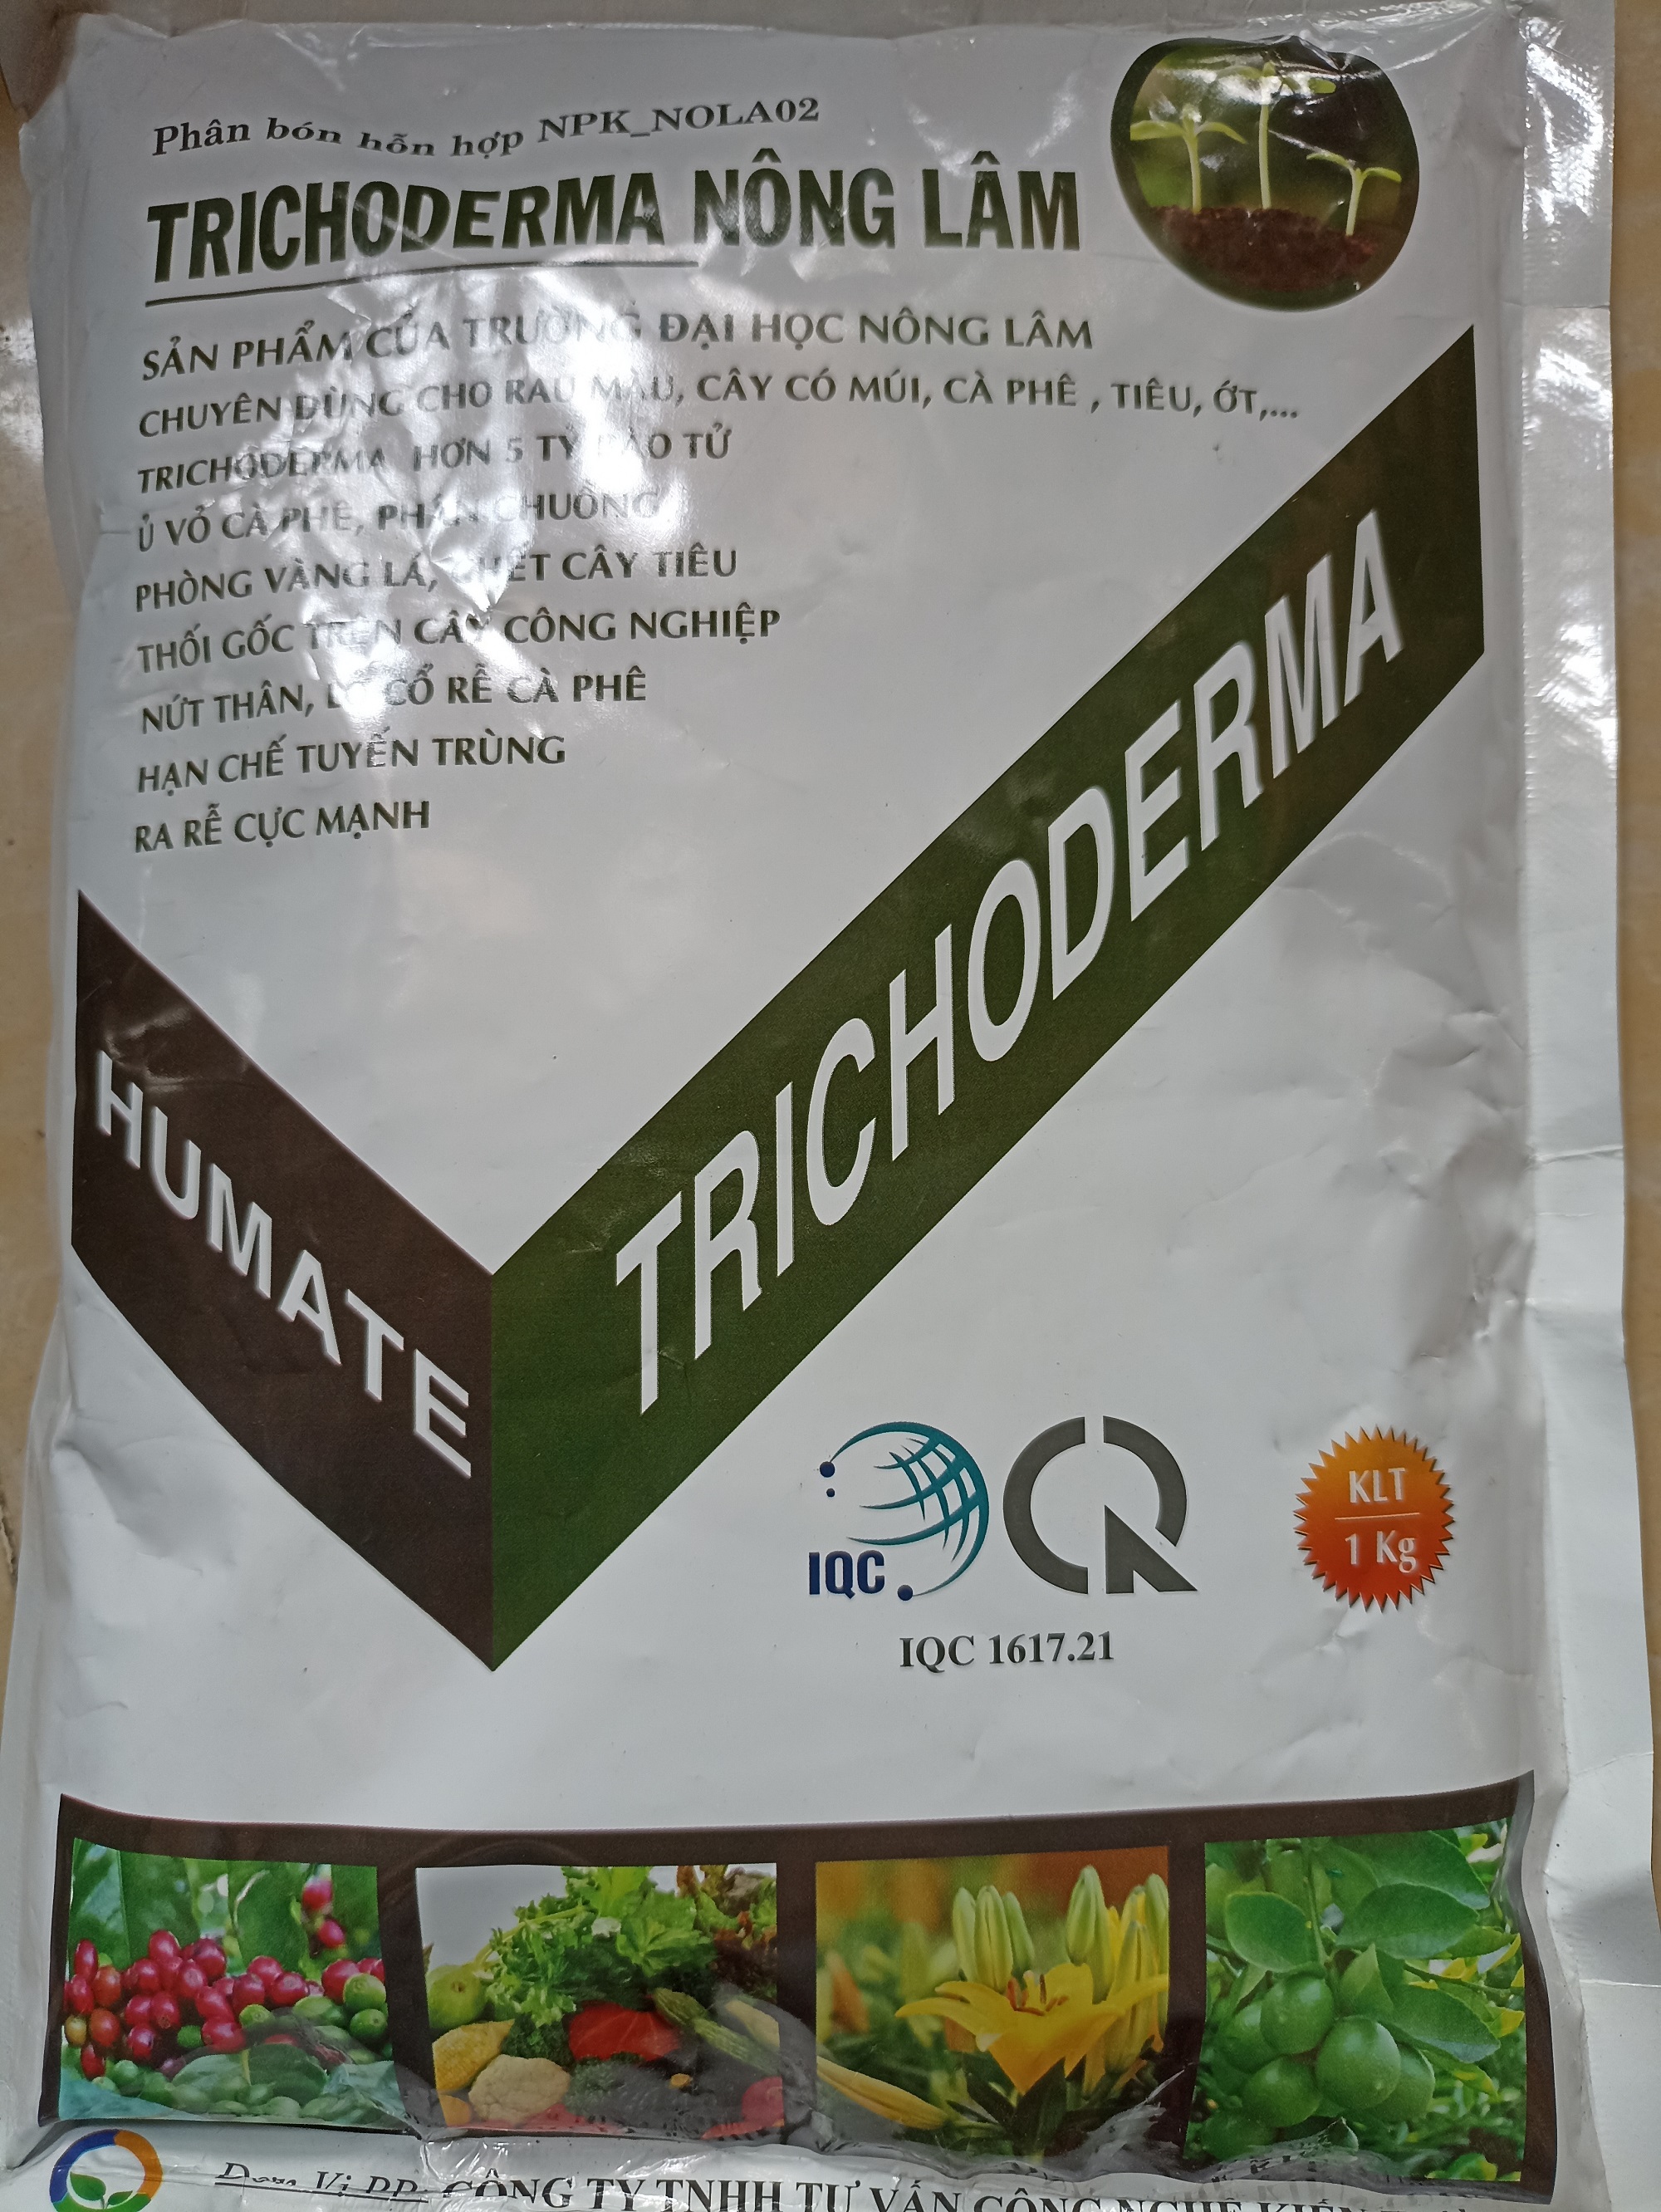 Nấm trichoderma Nông Lâm - 5 tỷ bào tử - gói 1 kg